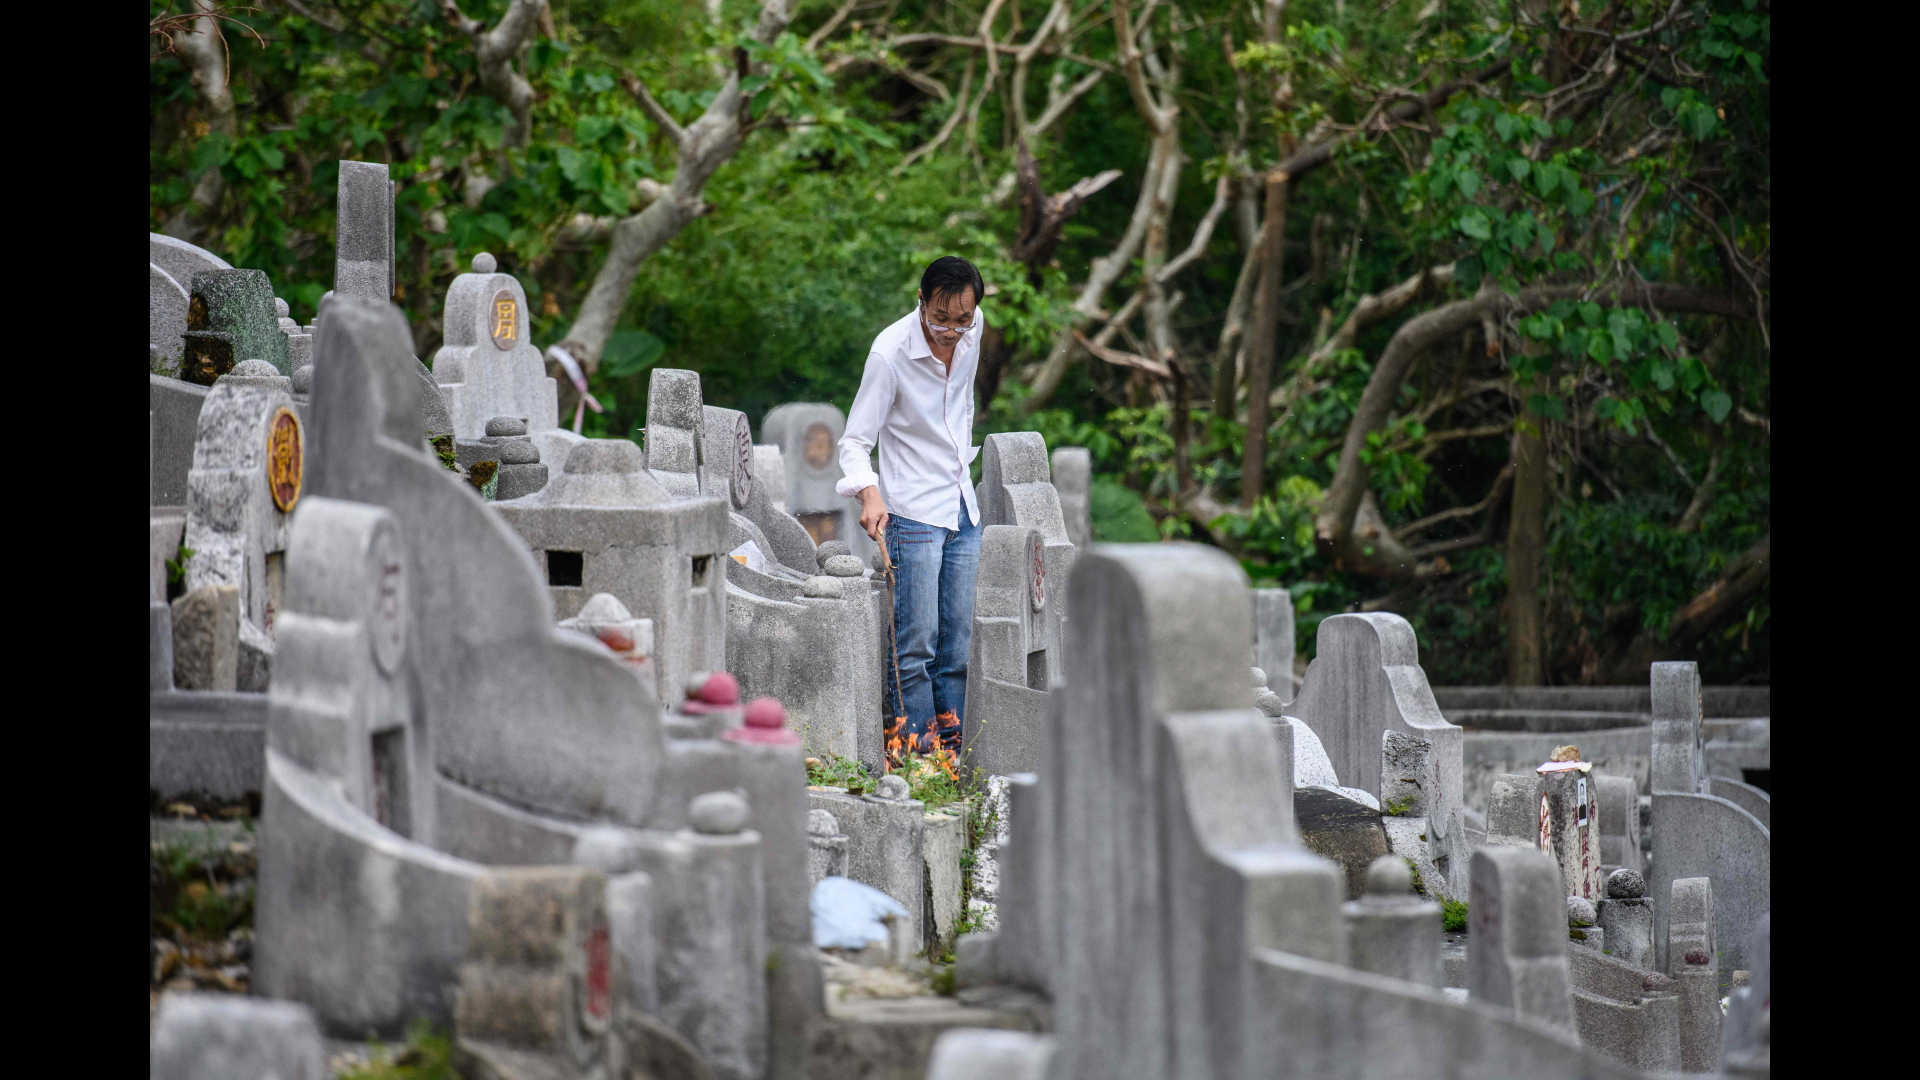 Ein Mann brennt an einem Grab in Hongkong zum Totengedenkfest Gaben für seine Ahnen ab. | Bildquelle: AFP